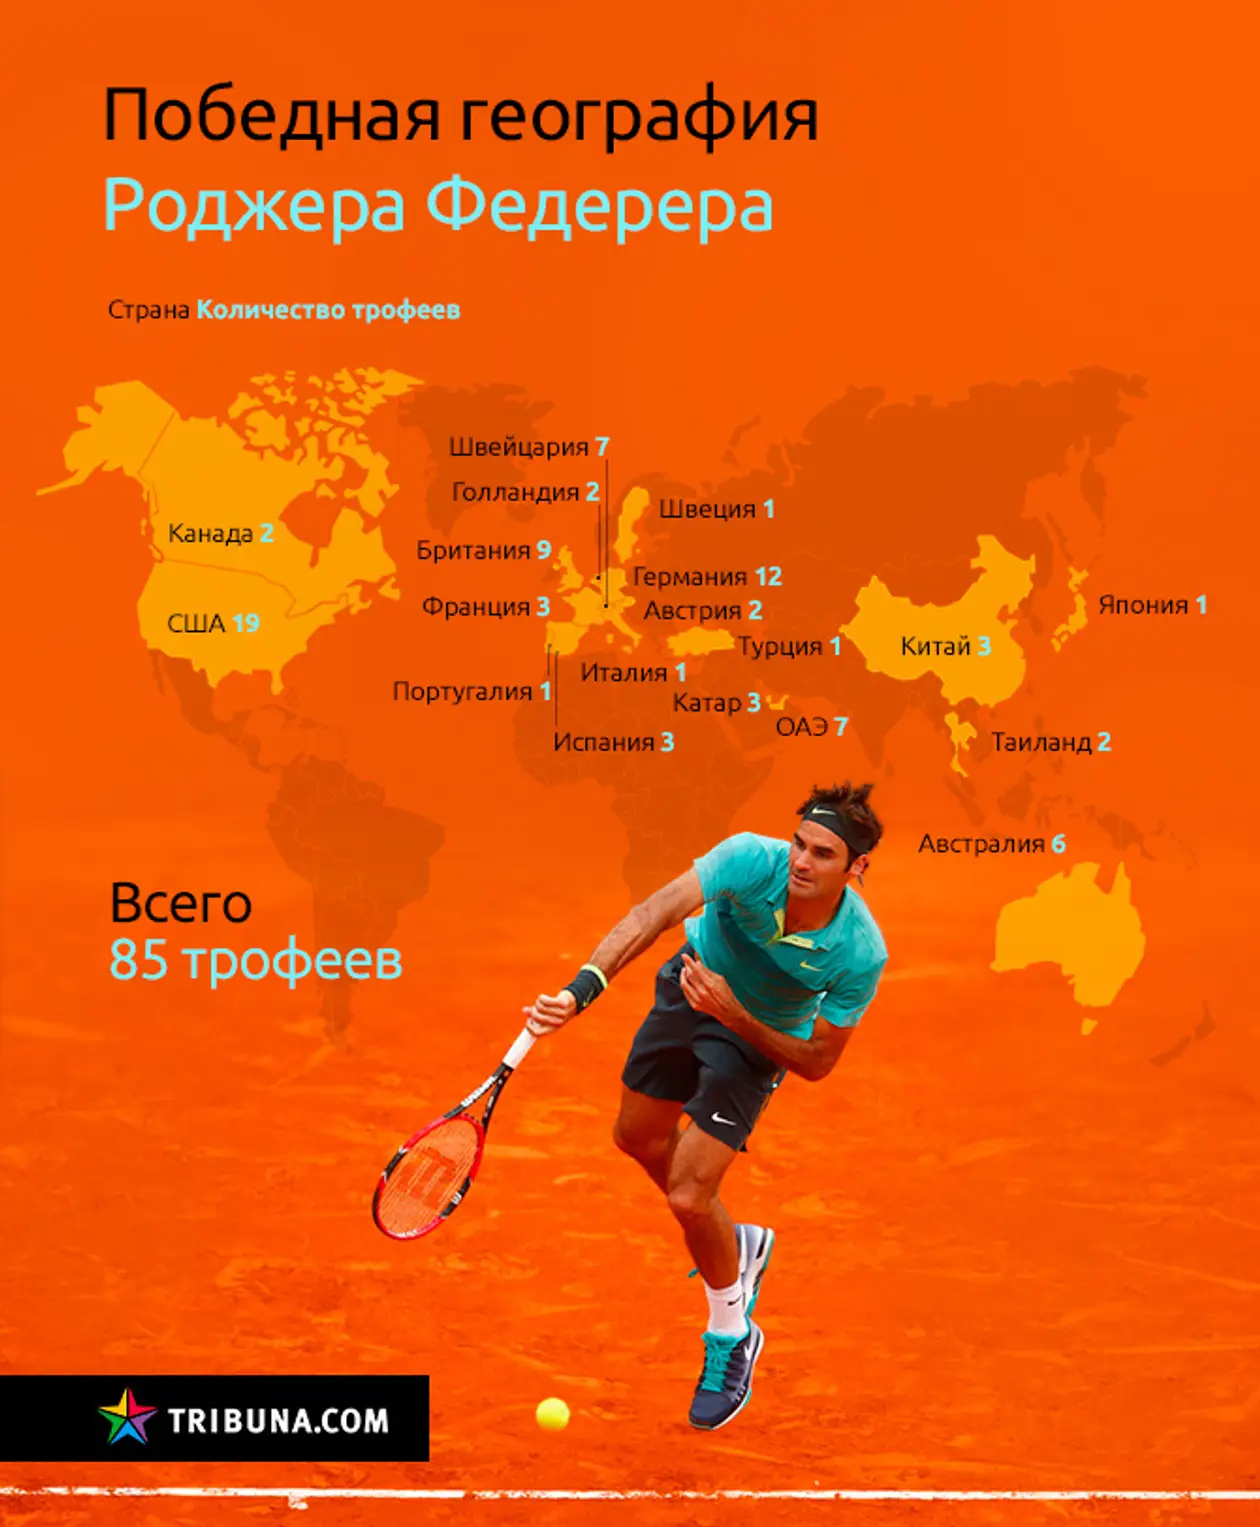 19 стран, в которых побеждал Роджер Федерер